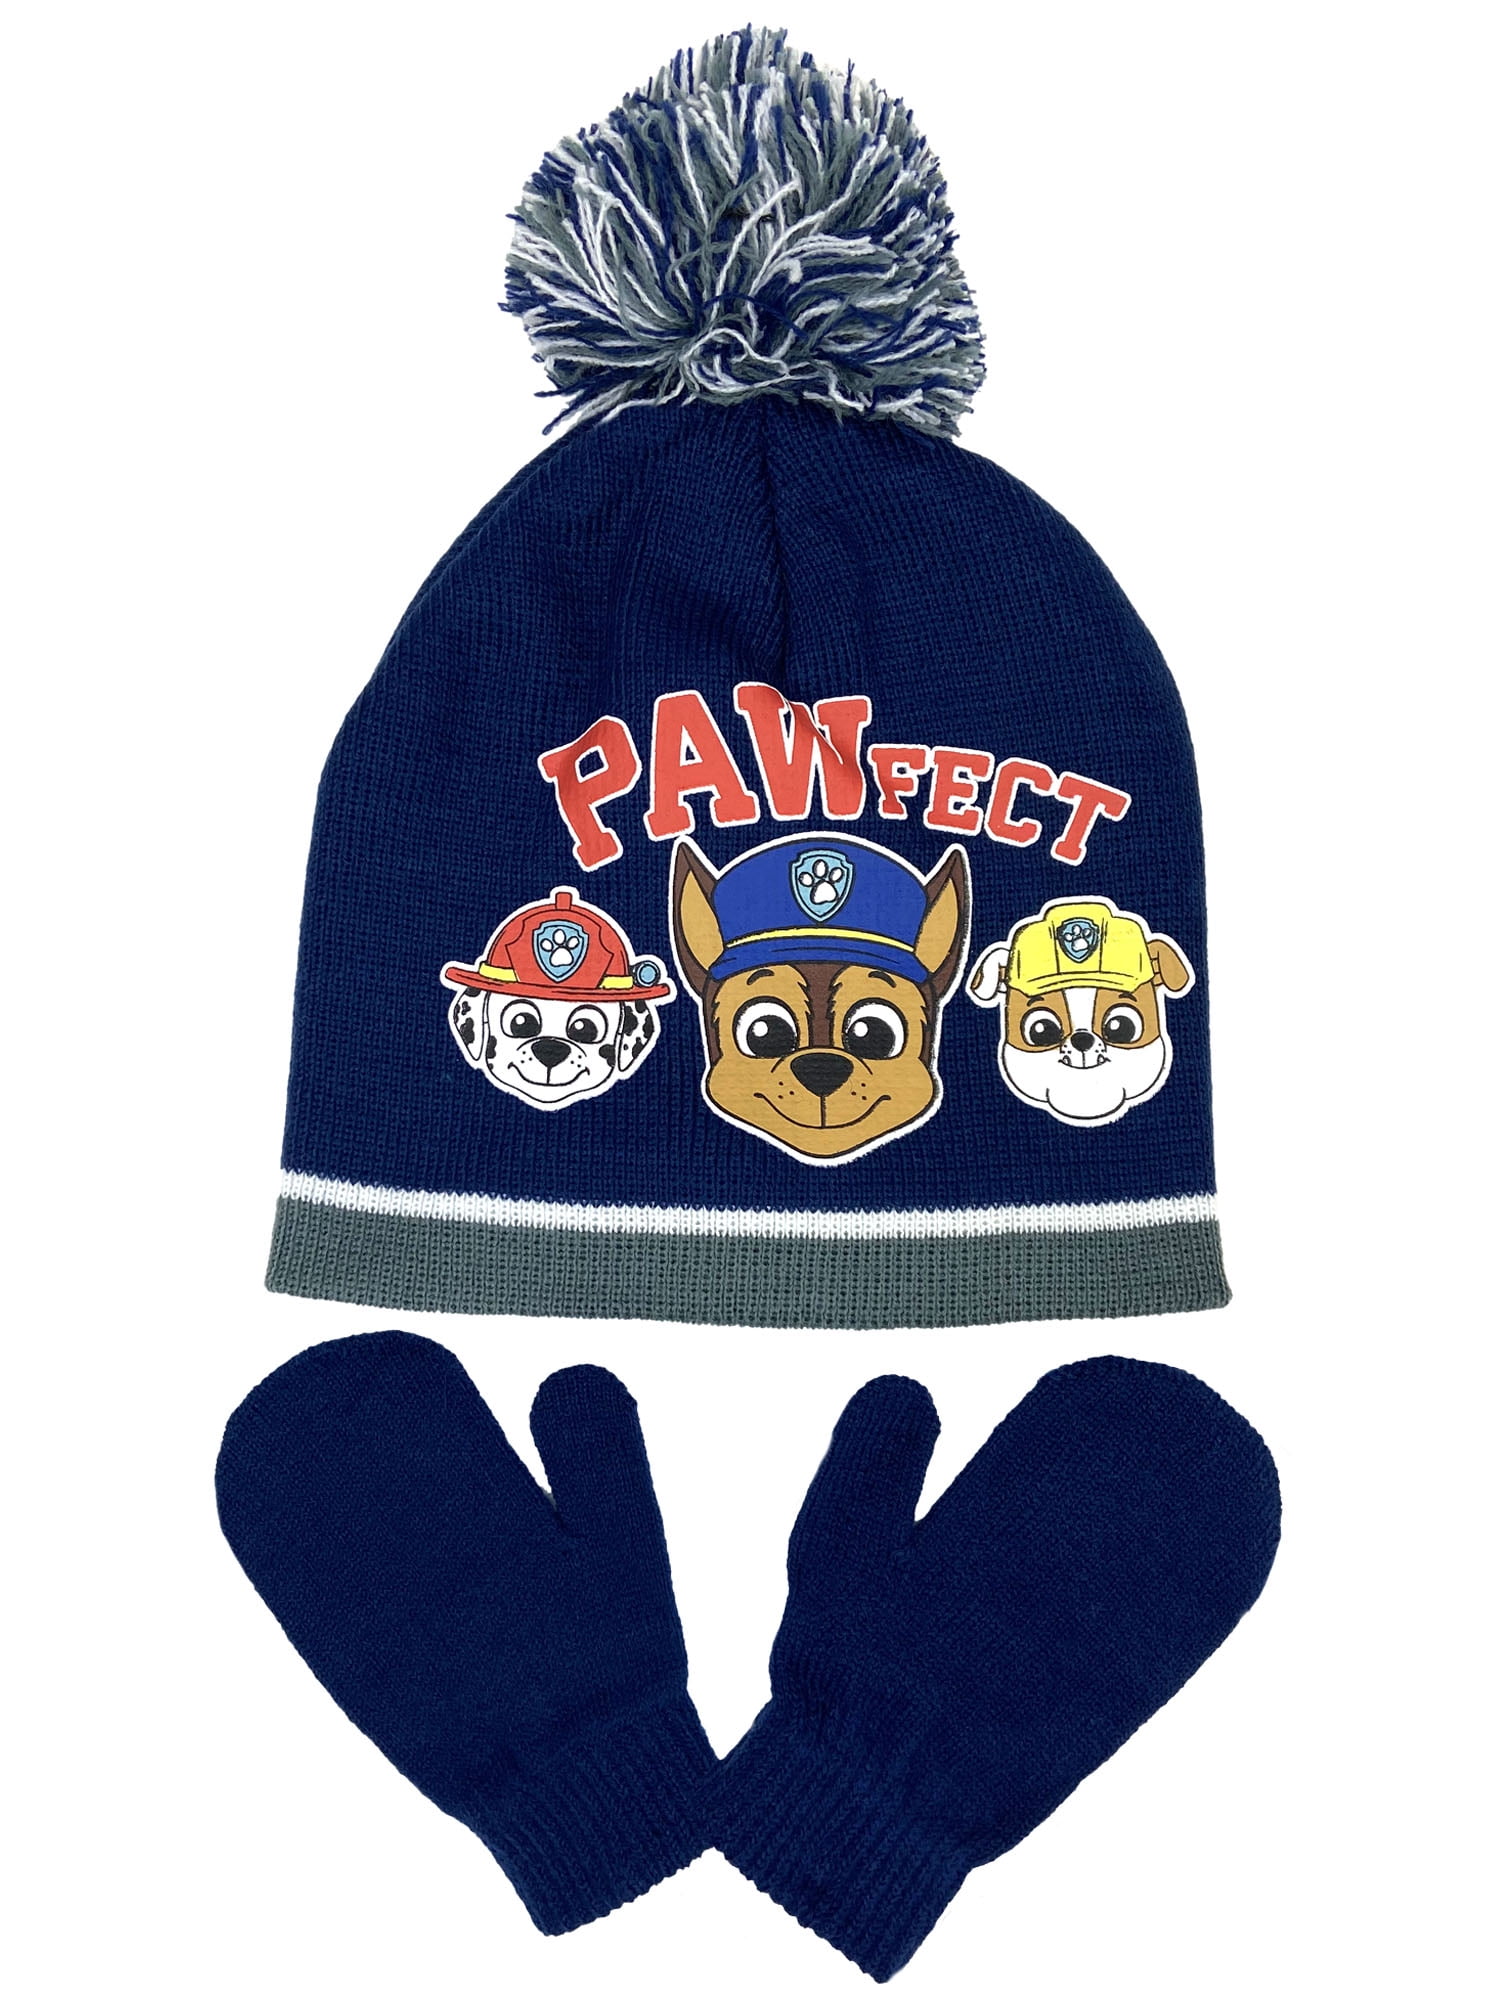 Paw Patrol Boy Winter Hat Gloves Beanie SET Mittens Kids Children Marshall Chase